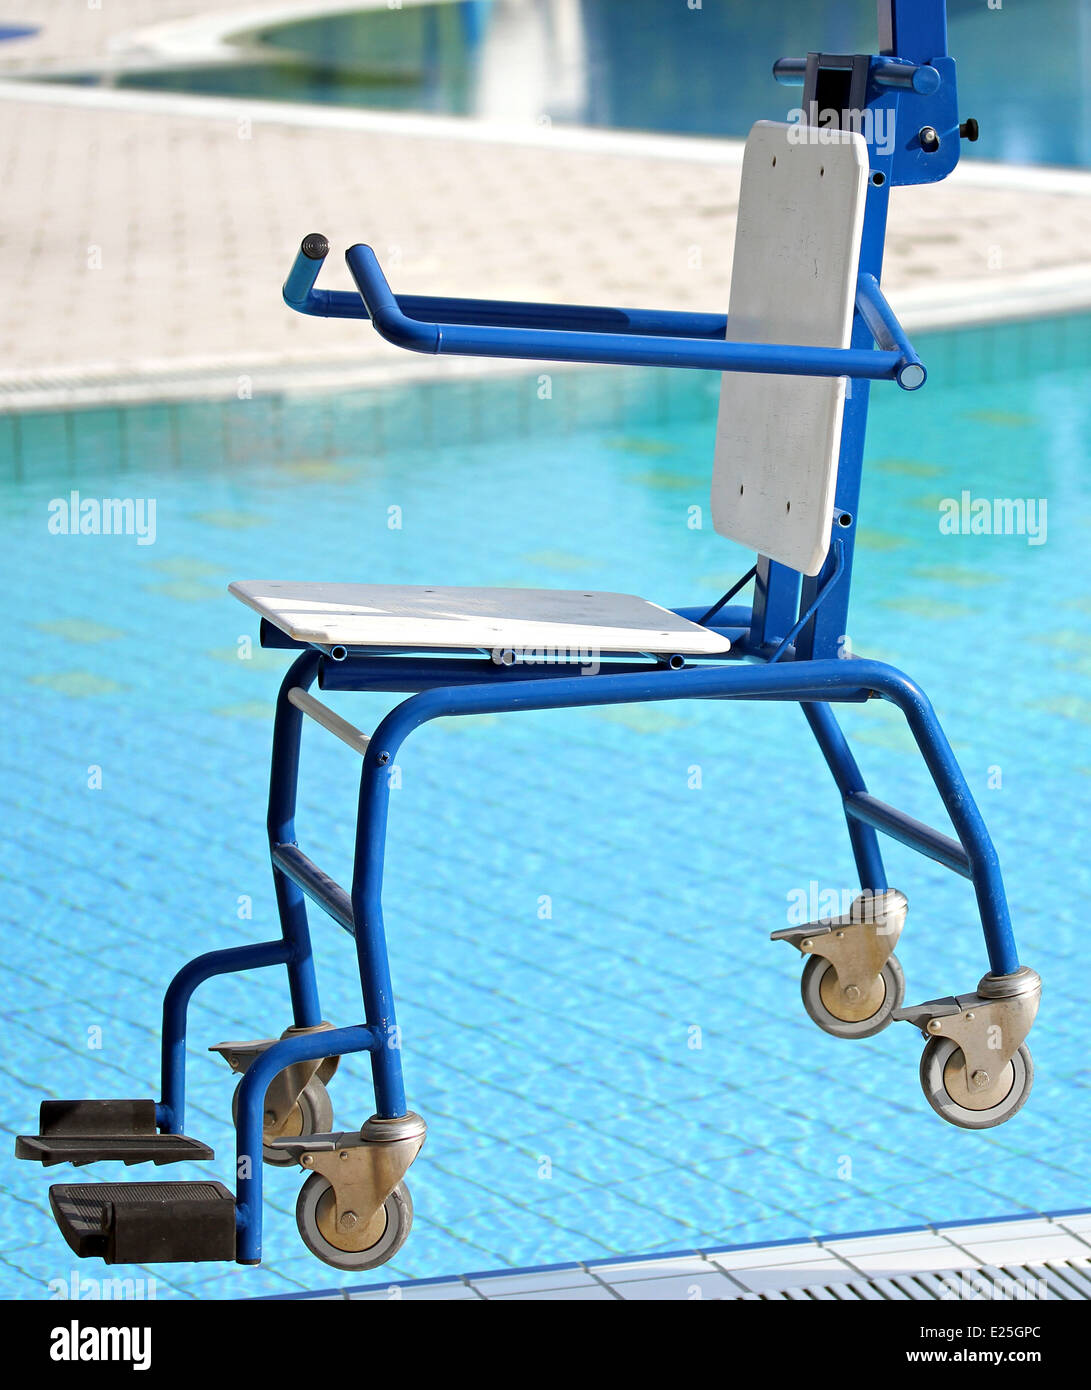 Président blu pour personnes handicapées à profiter de la piscine pour les handicapés Banque D'Images